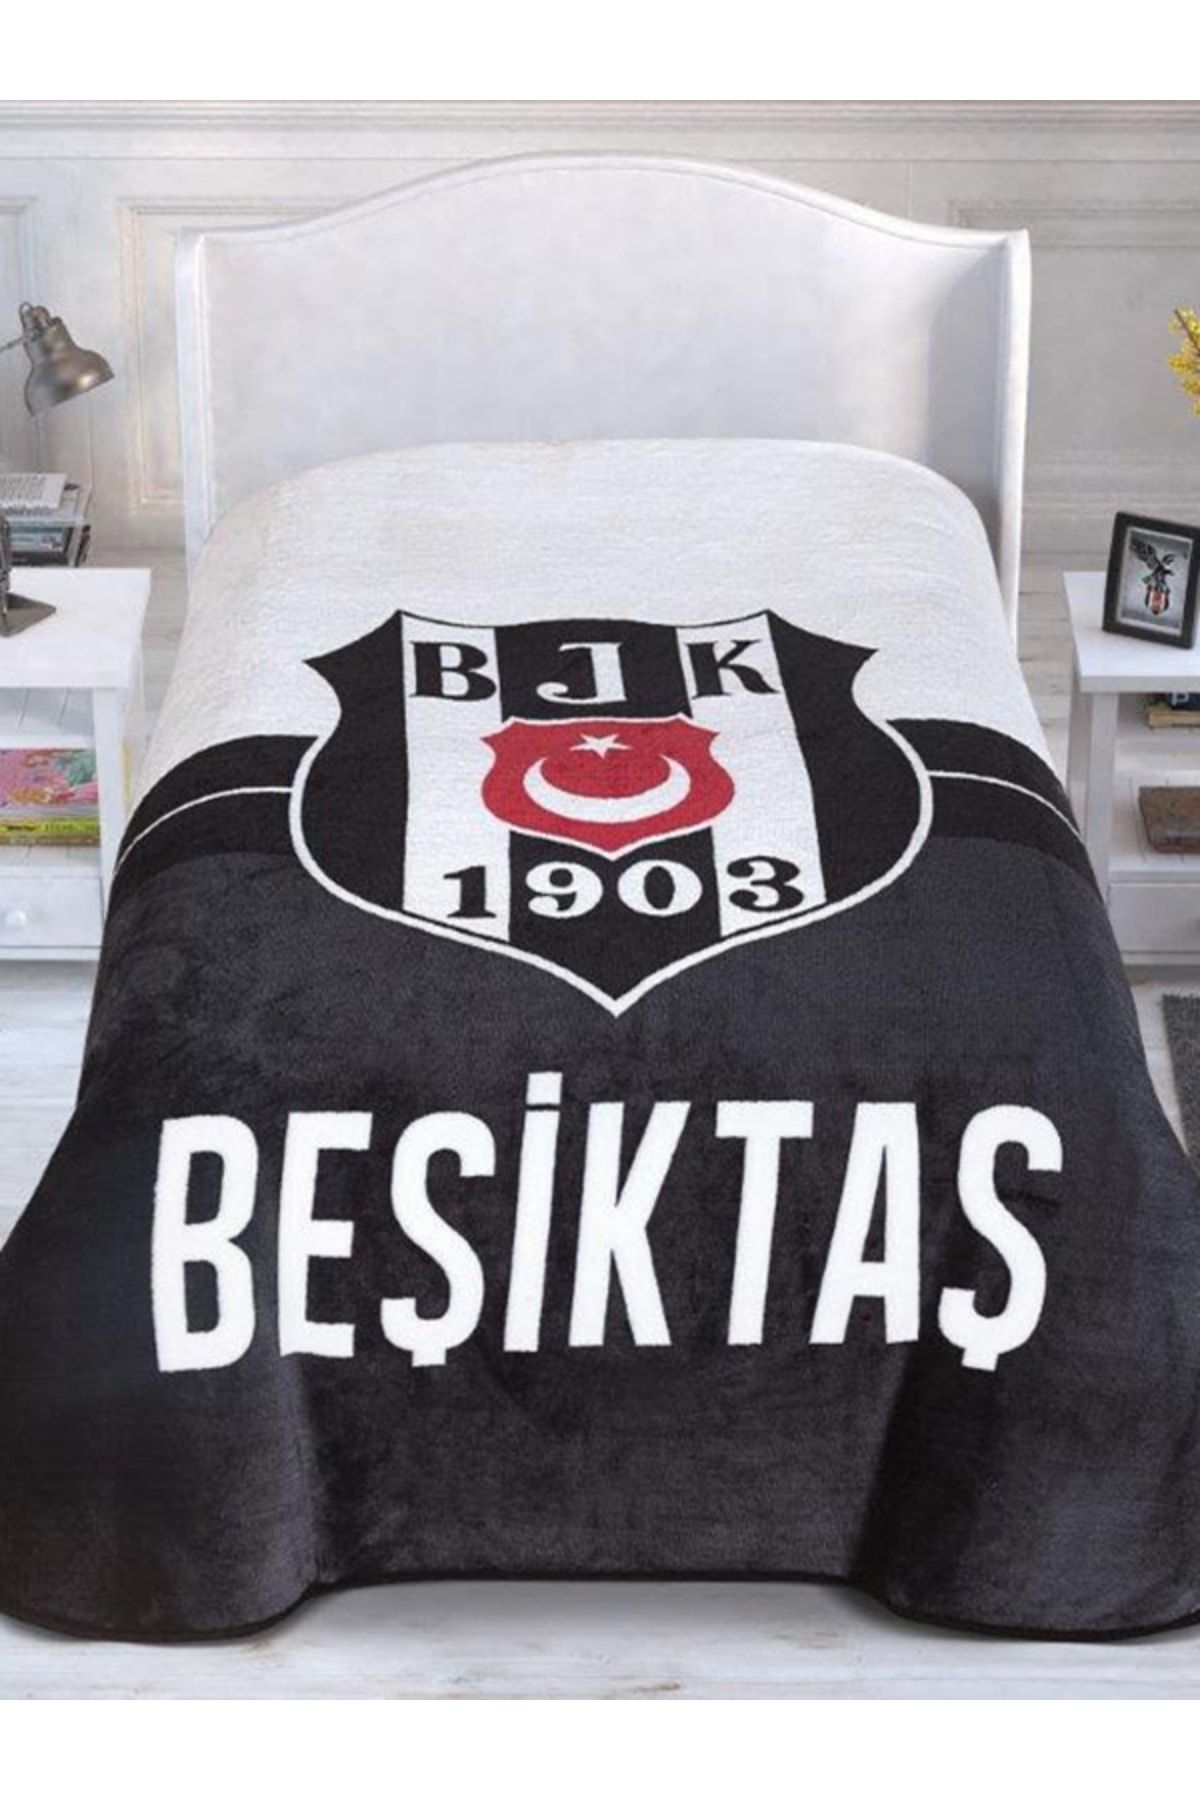 Zorlu Beşiktaş 1903 Lisanslı Yeni Sezon Tek Kişilik Battaniye